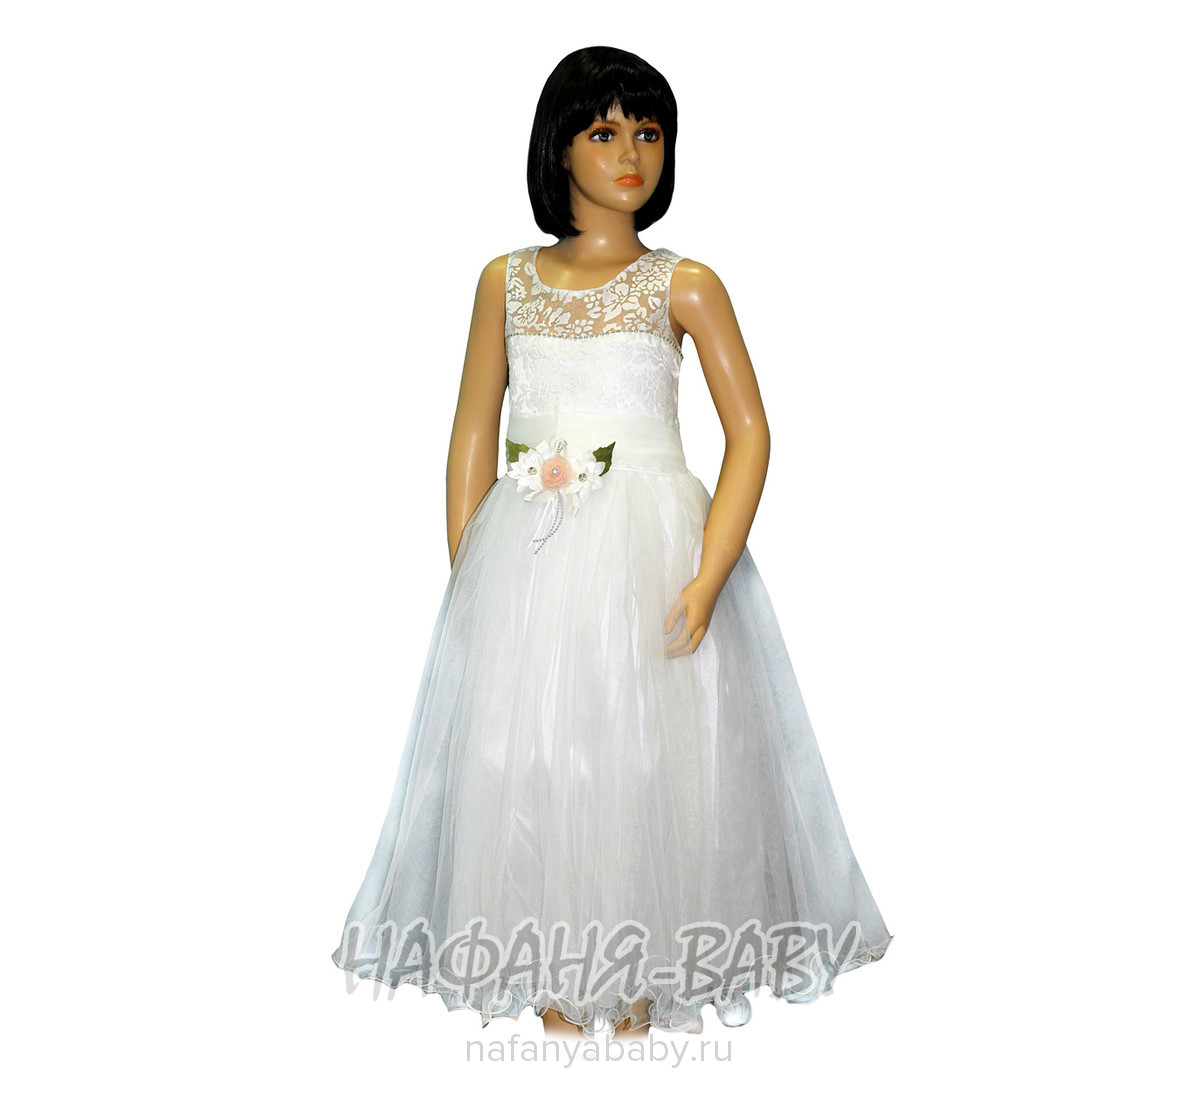 Нарядное платье GEPETTO, купить в интернет магазине Нафаня. арт: 0629.